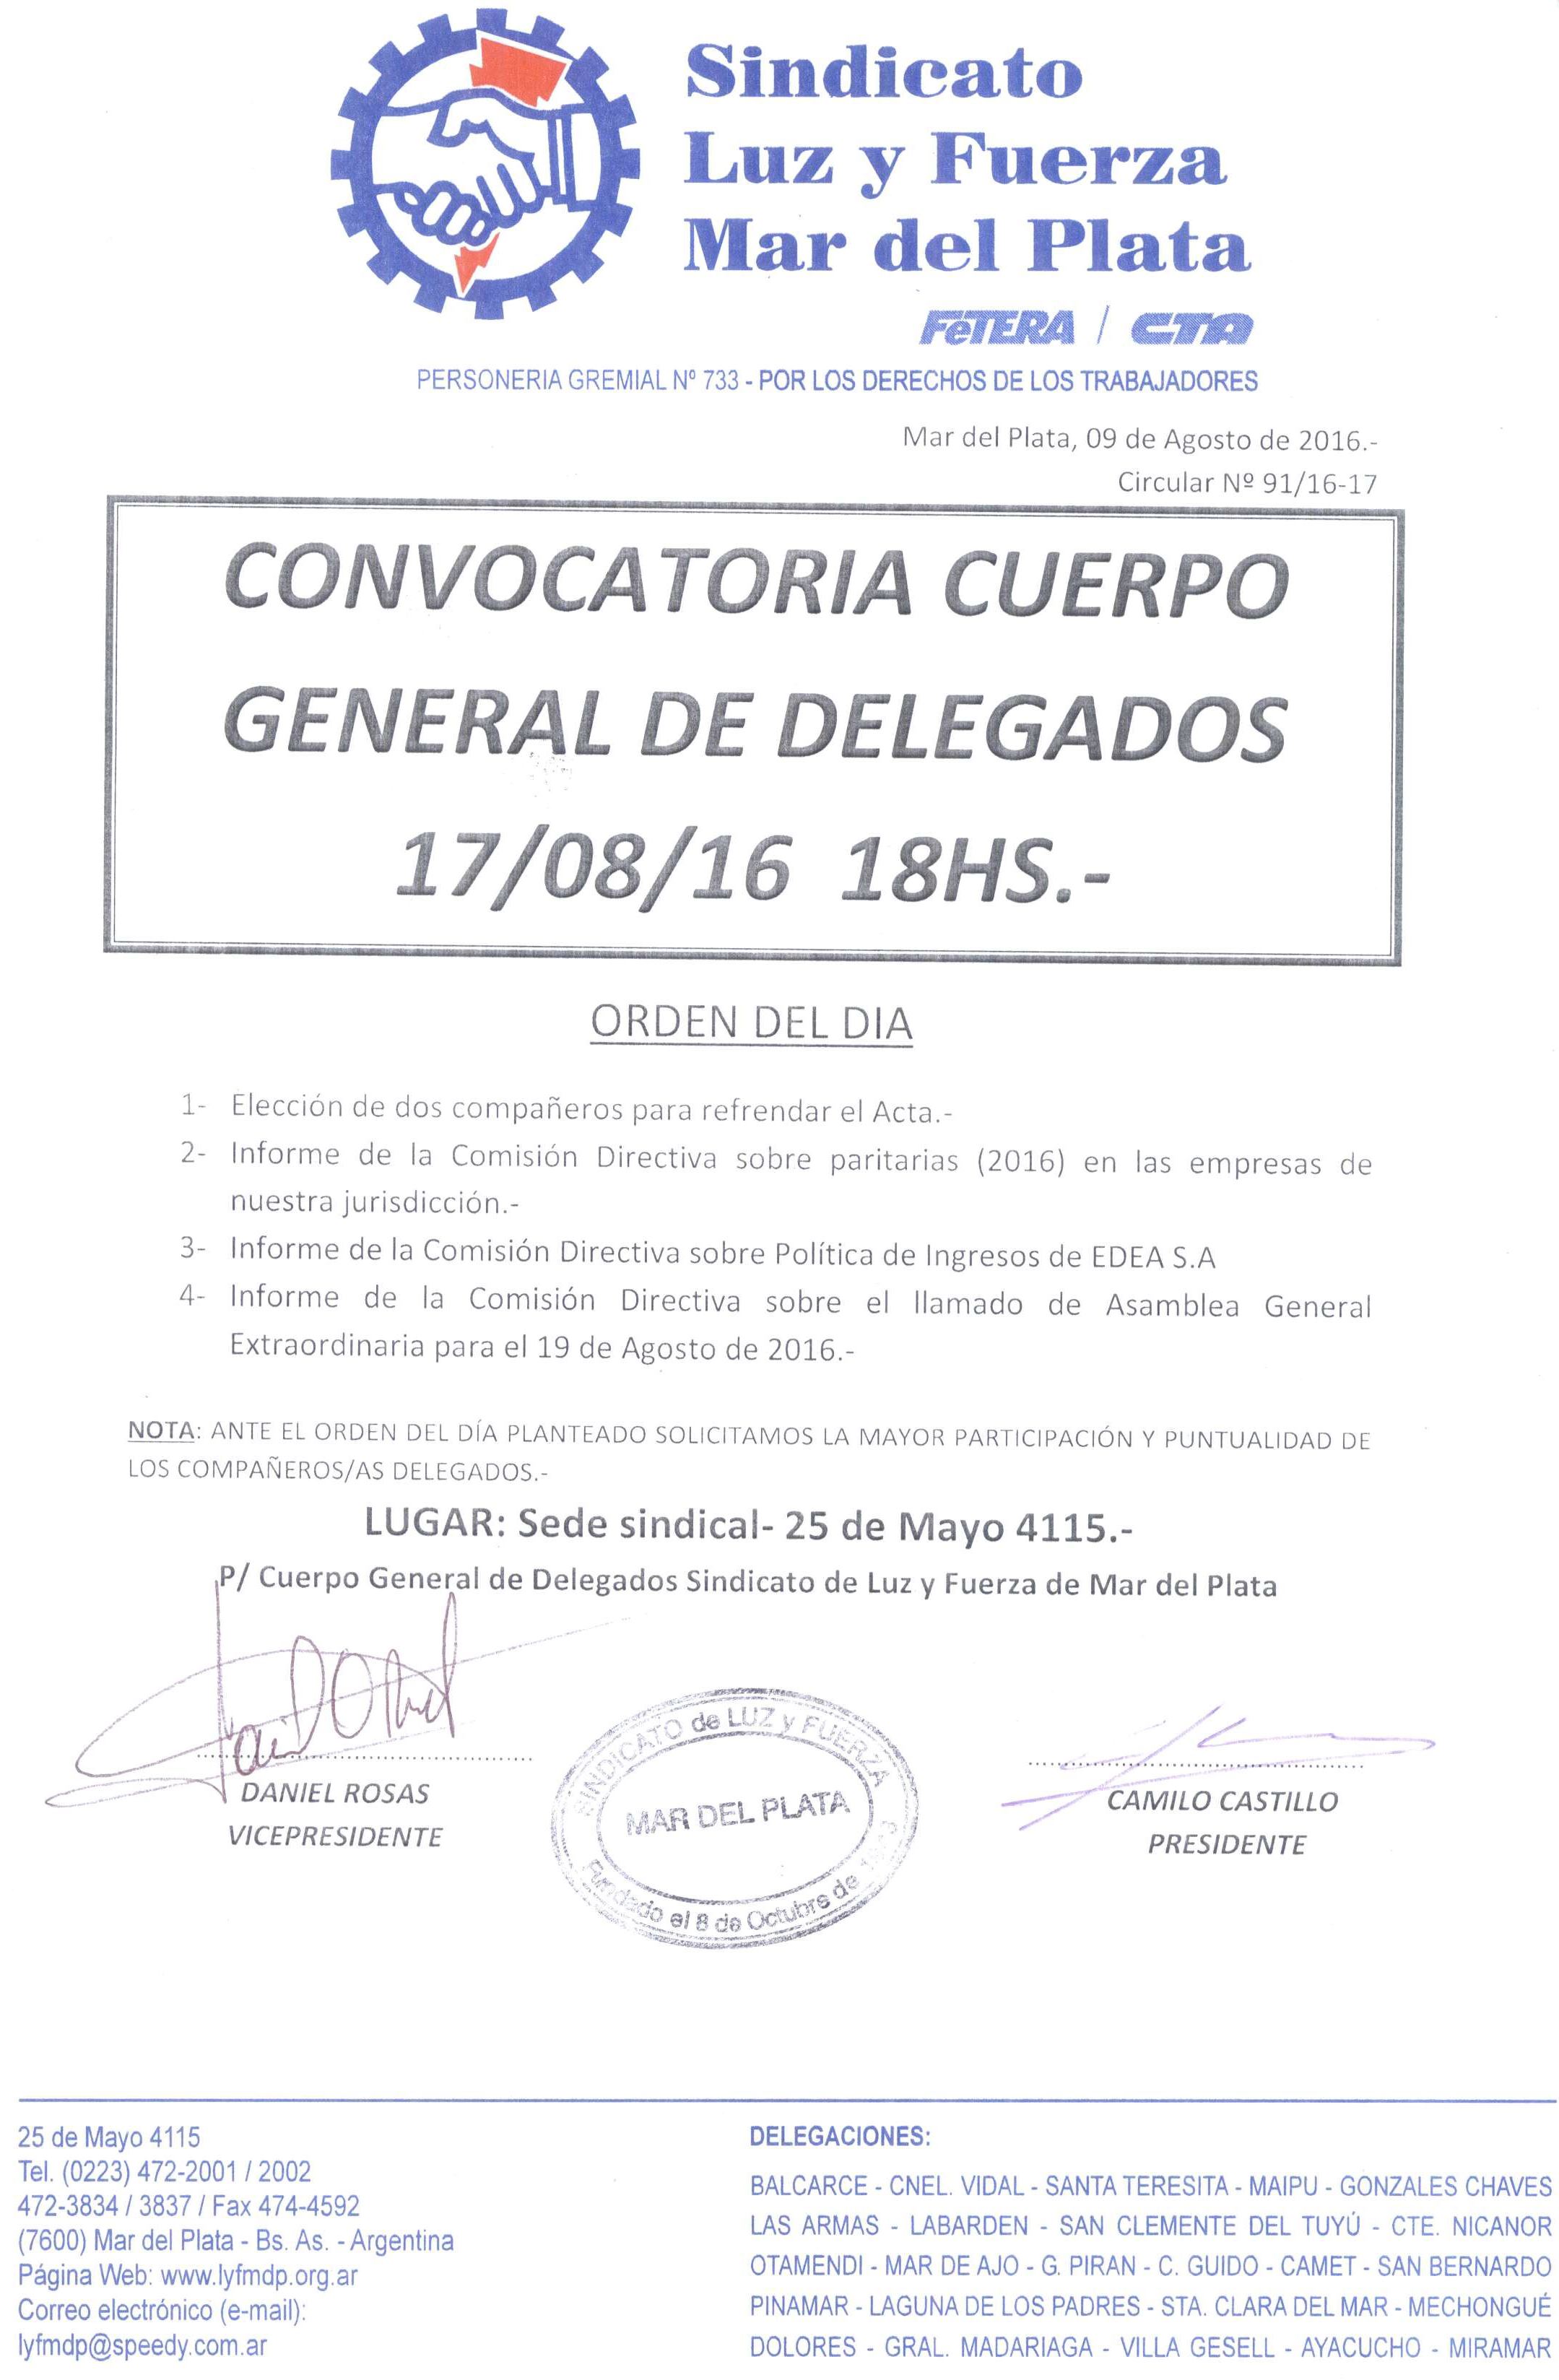 CONVOCATORIA AL CUERPO GENERAL DE DELEGADOS 17 DE AGOSTO 2016